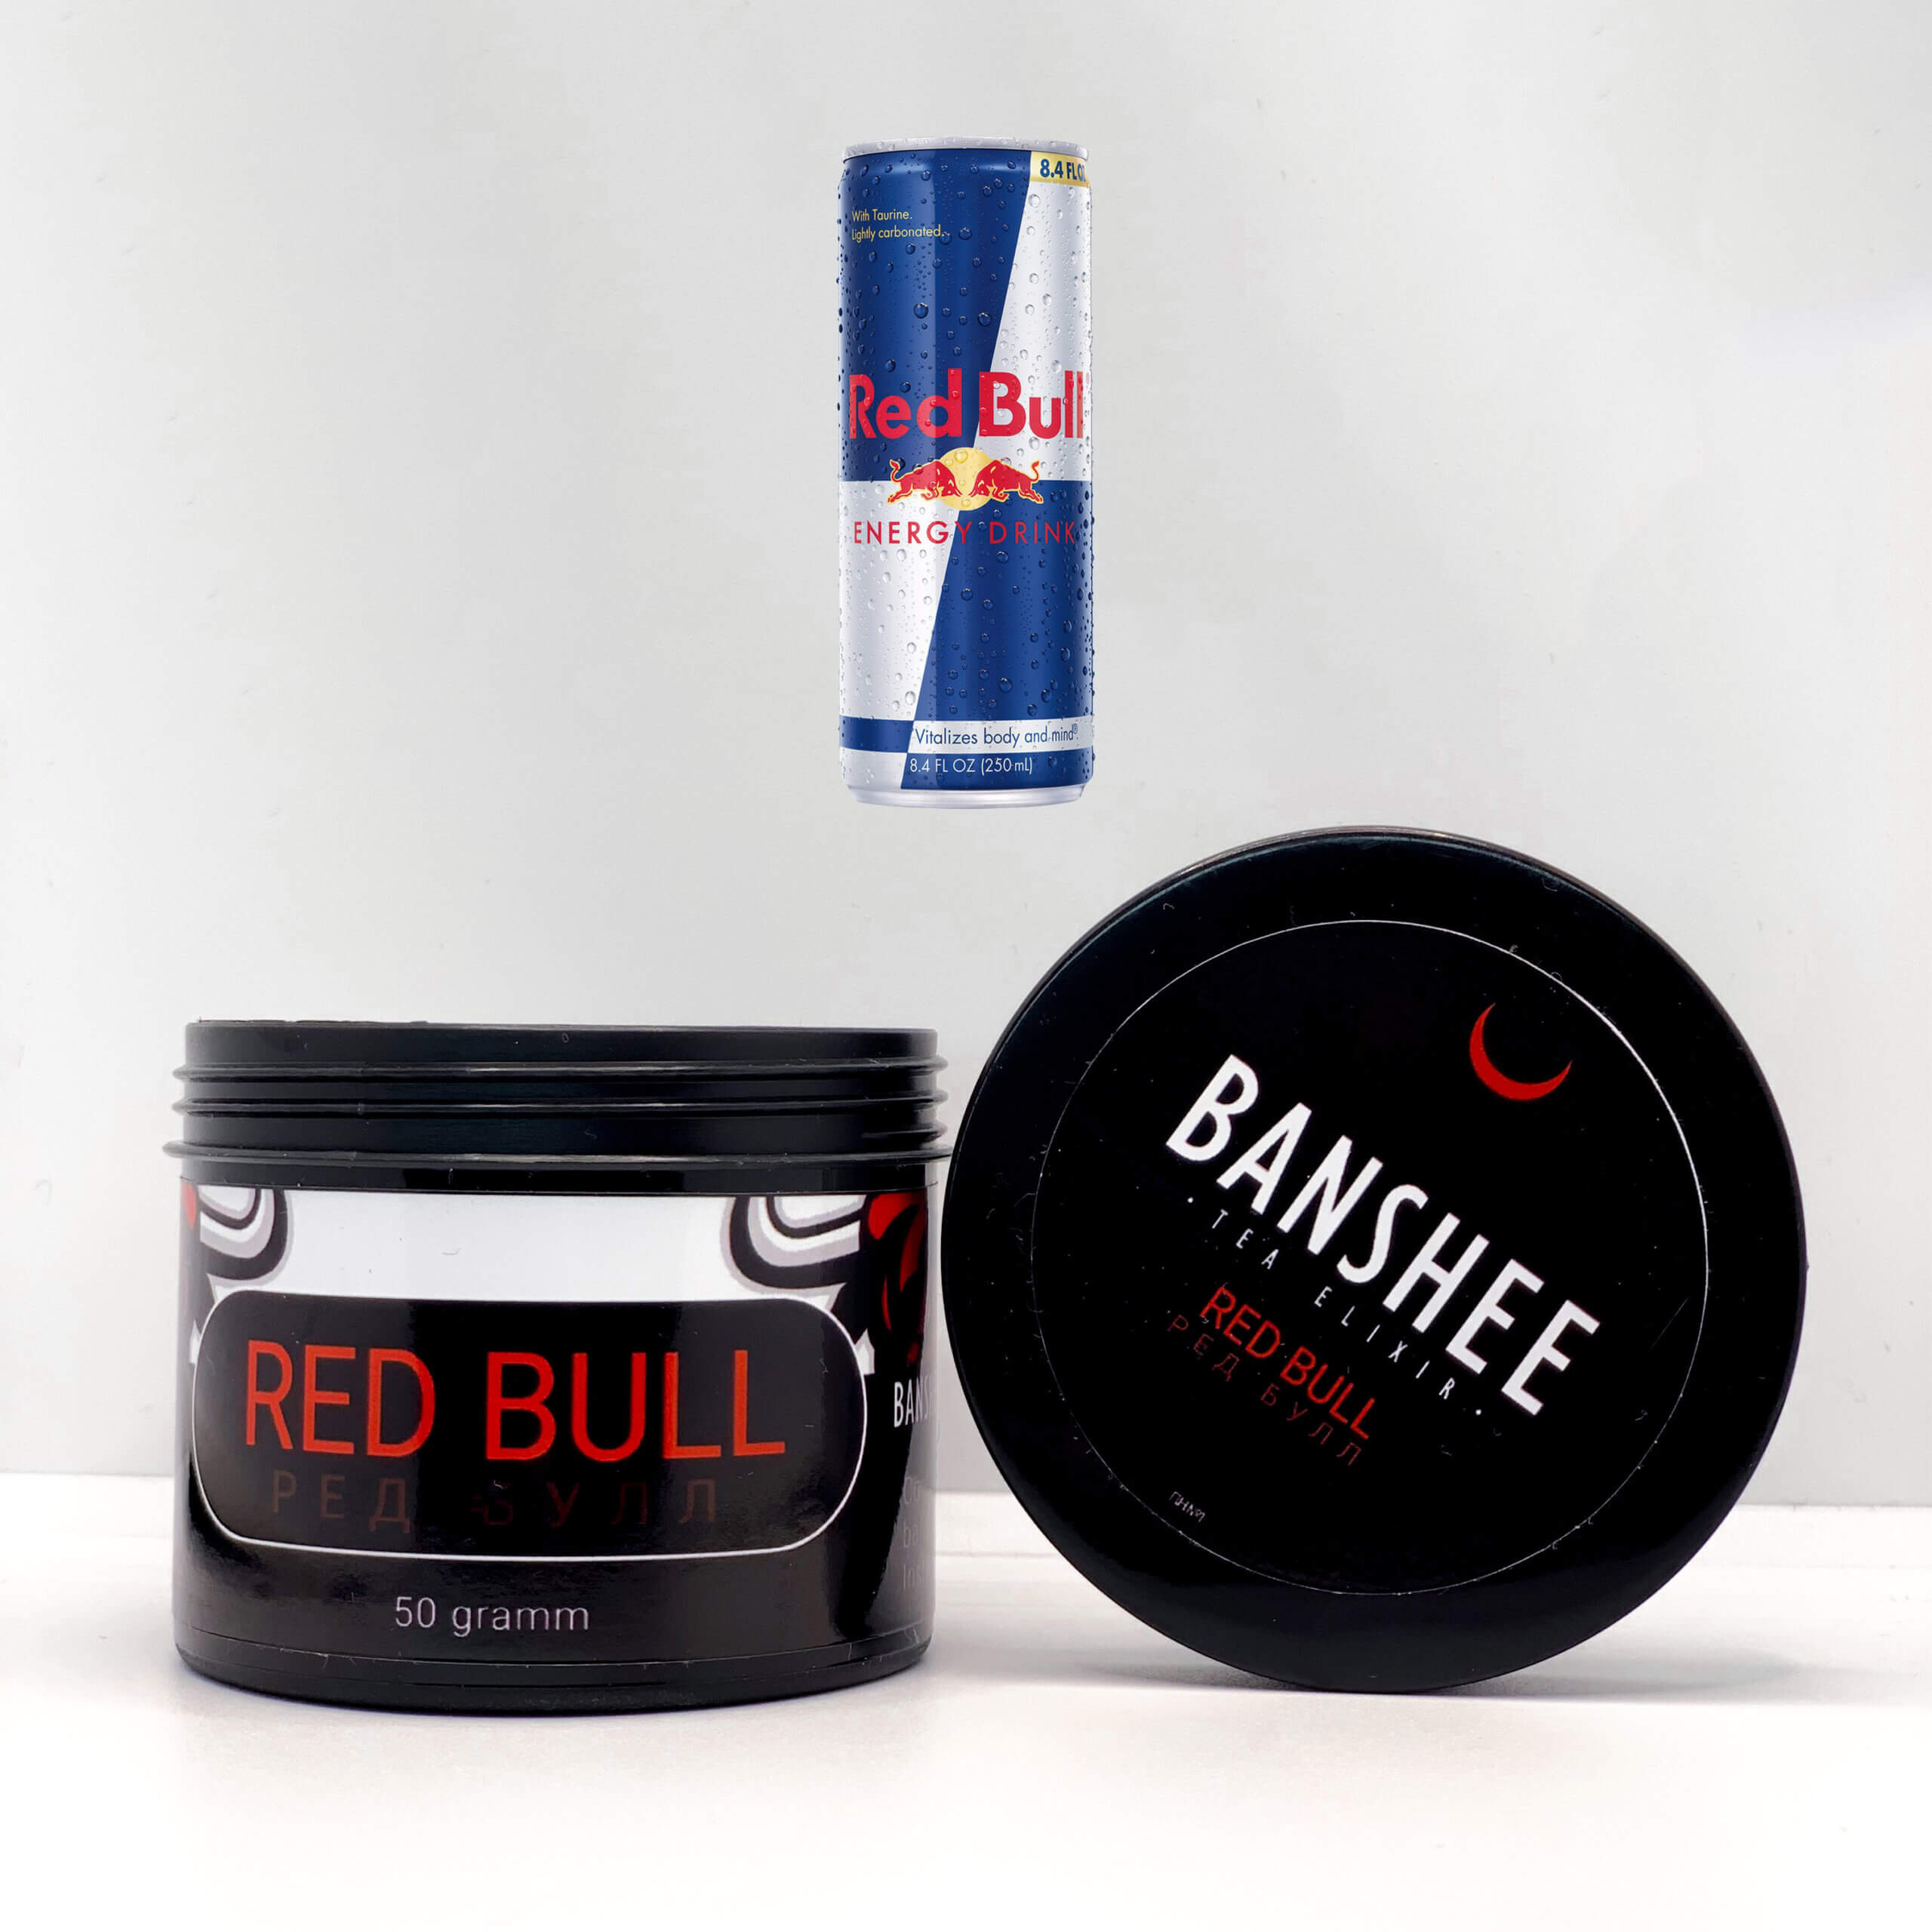 Banshee Dark Red bull - Ред бул